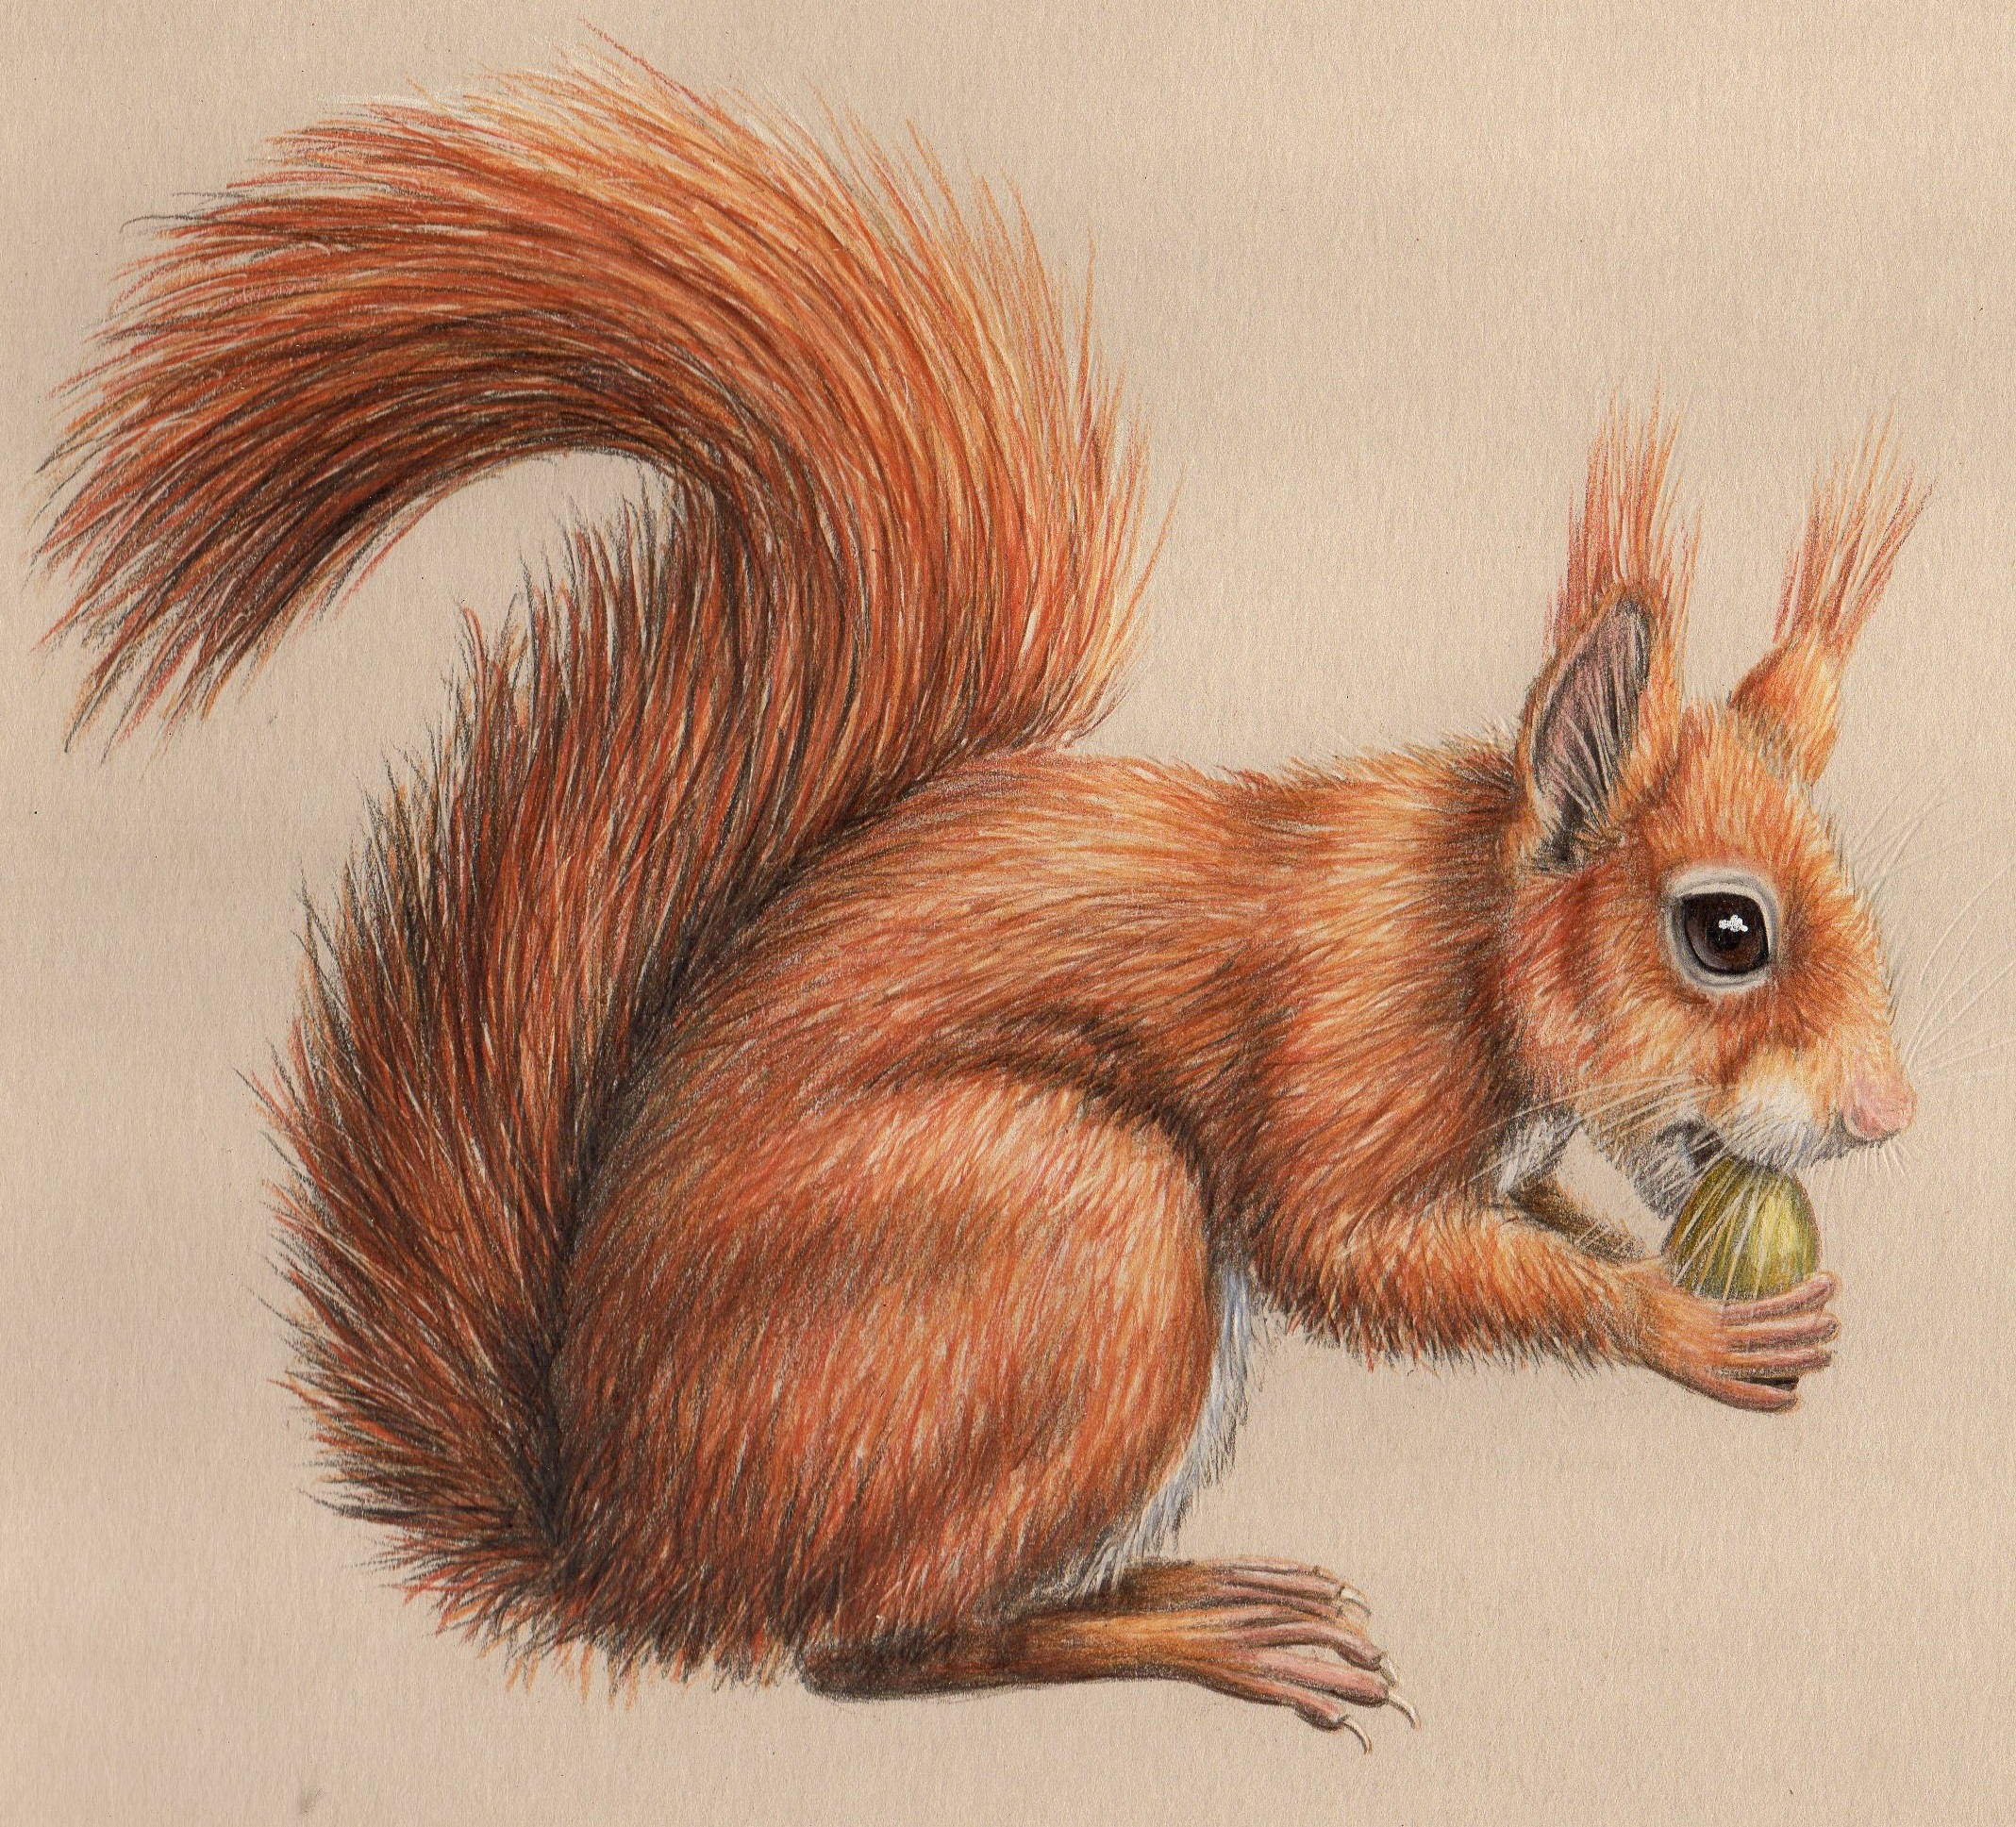 Squirrel Drawing Images - Free Download on Freepik